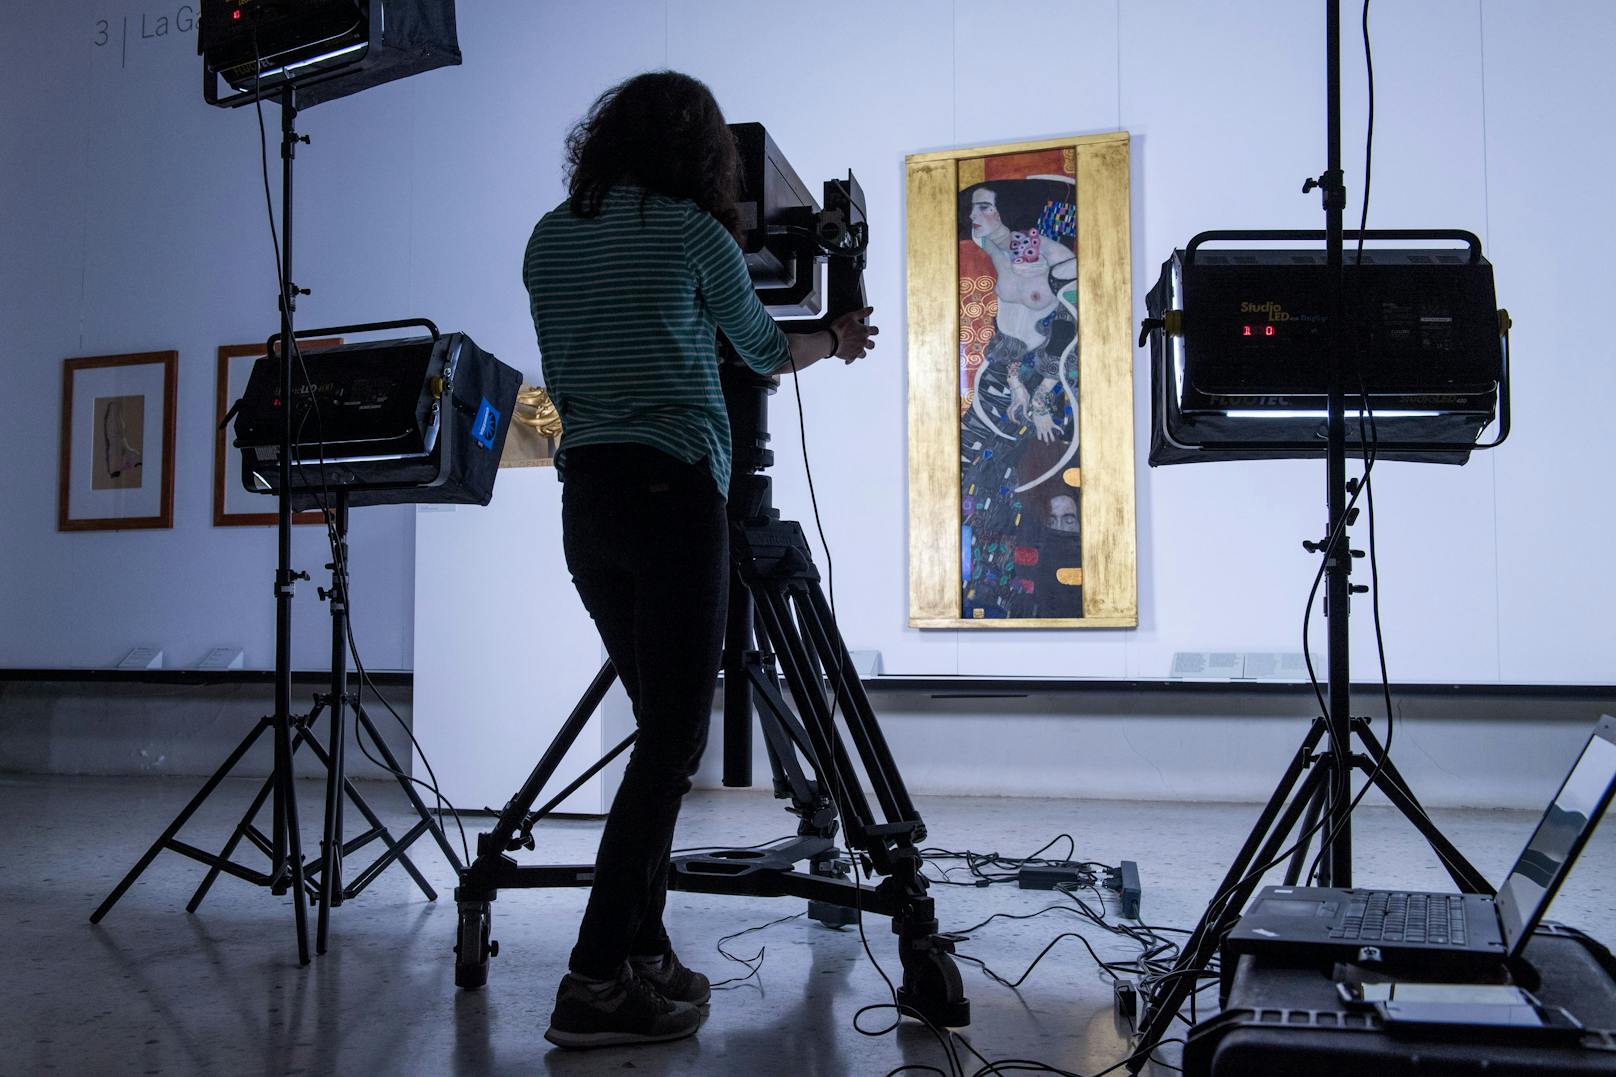 Besonders beeindruckend: Eigentlich zerstörten Klimt-Werken wird neues Leben eingehaucht. Zu den prominentesten verloren gegangenen Werken gehören die so genannten Fakultätsbilder, ...